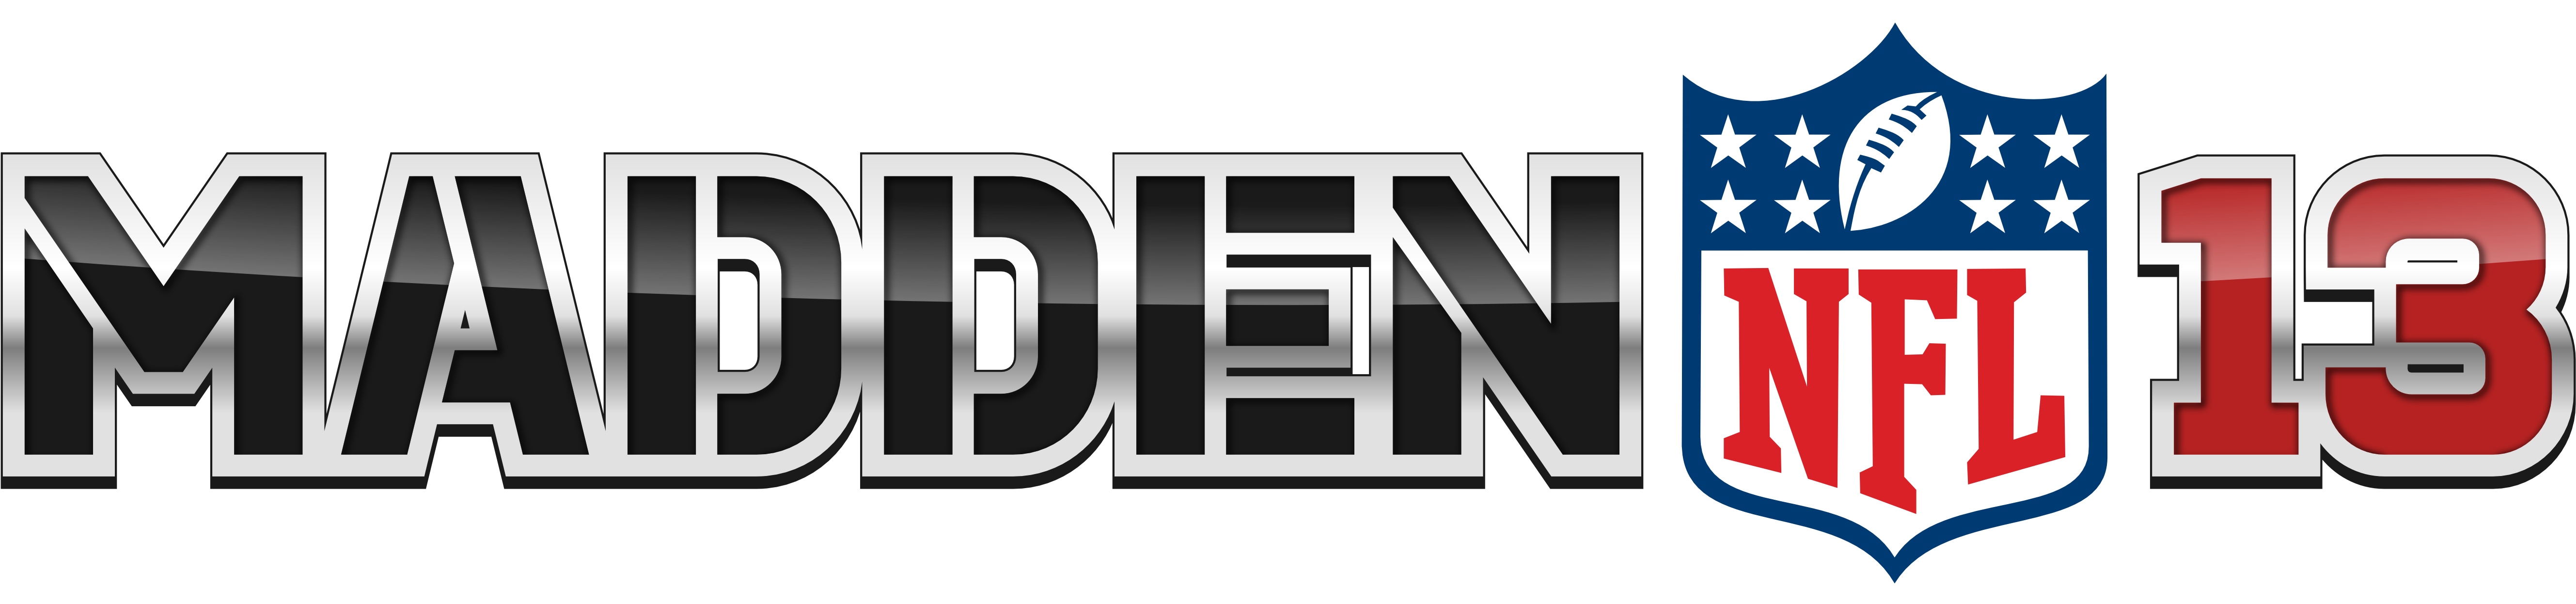 Madden NFL Logo PNG HD Images